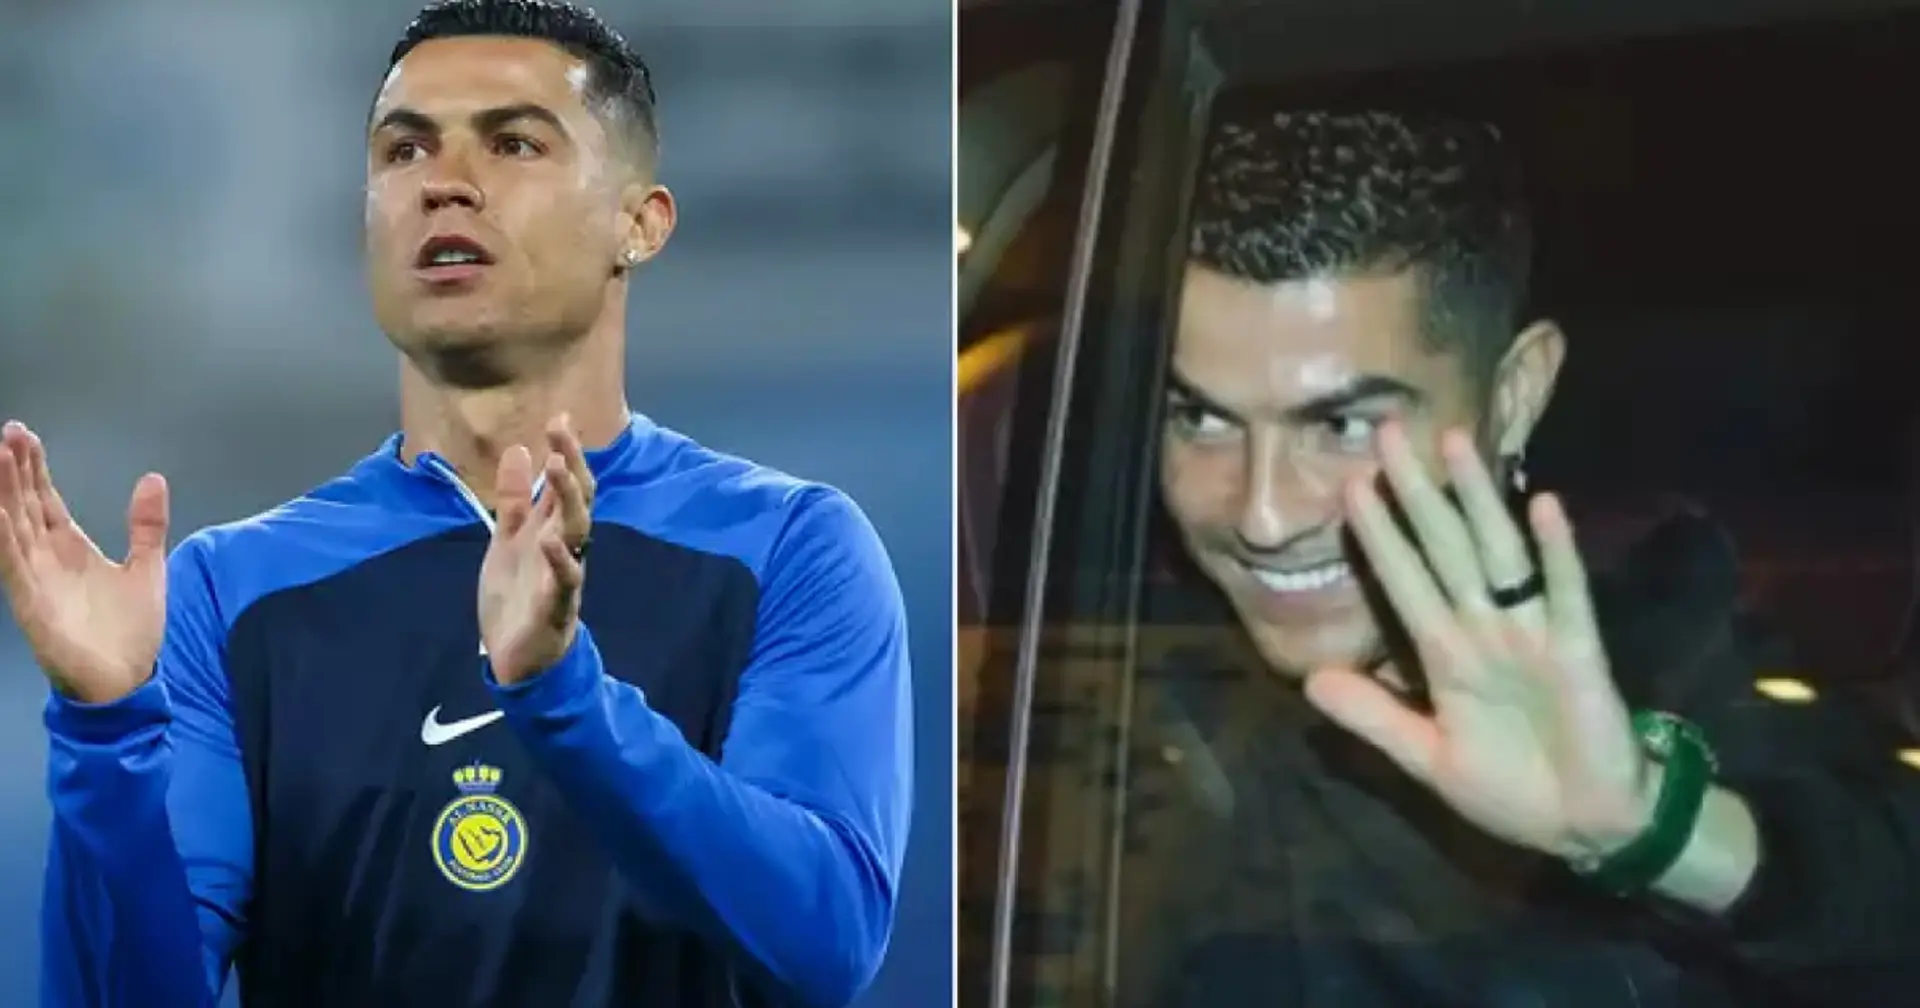 Perché Ronaldo porta al dito un anello nero anche se non è sposato?